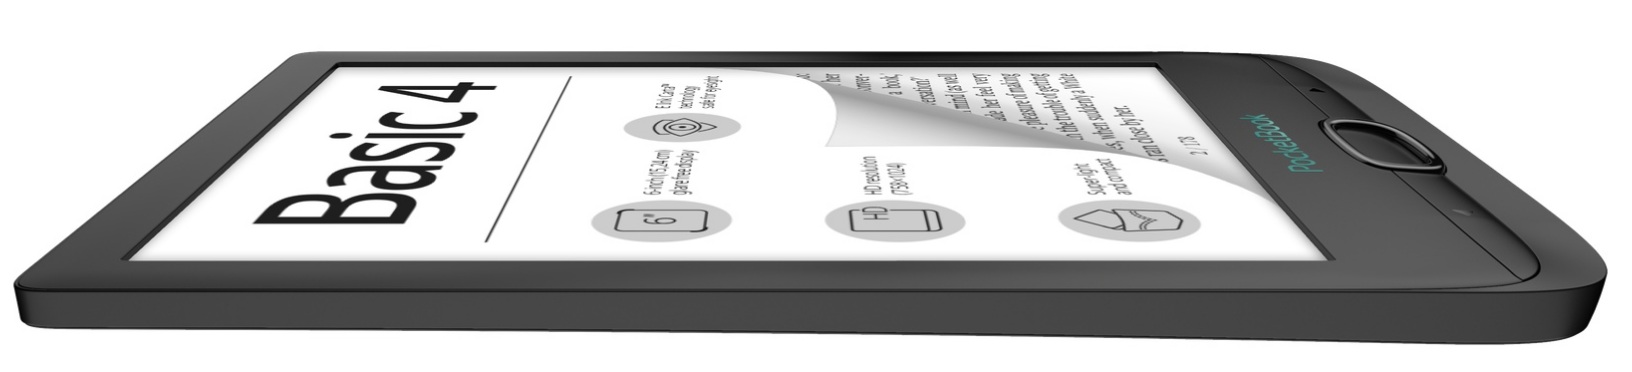 PocketBook Basic 4 - Diseño compacto